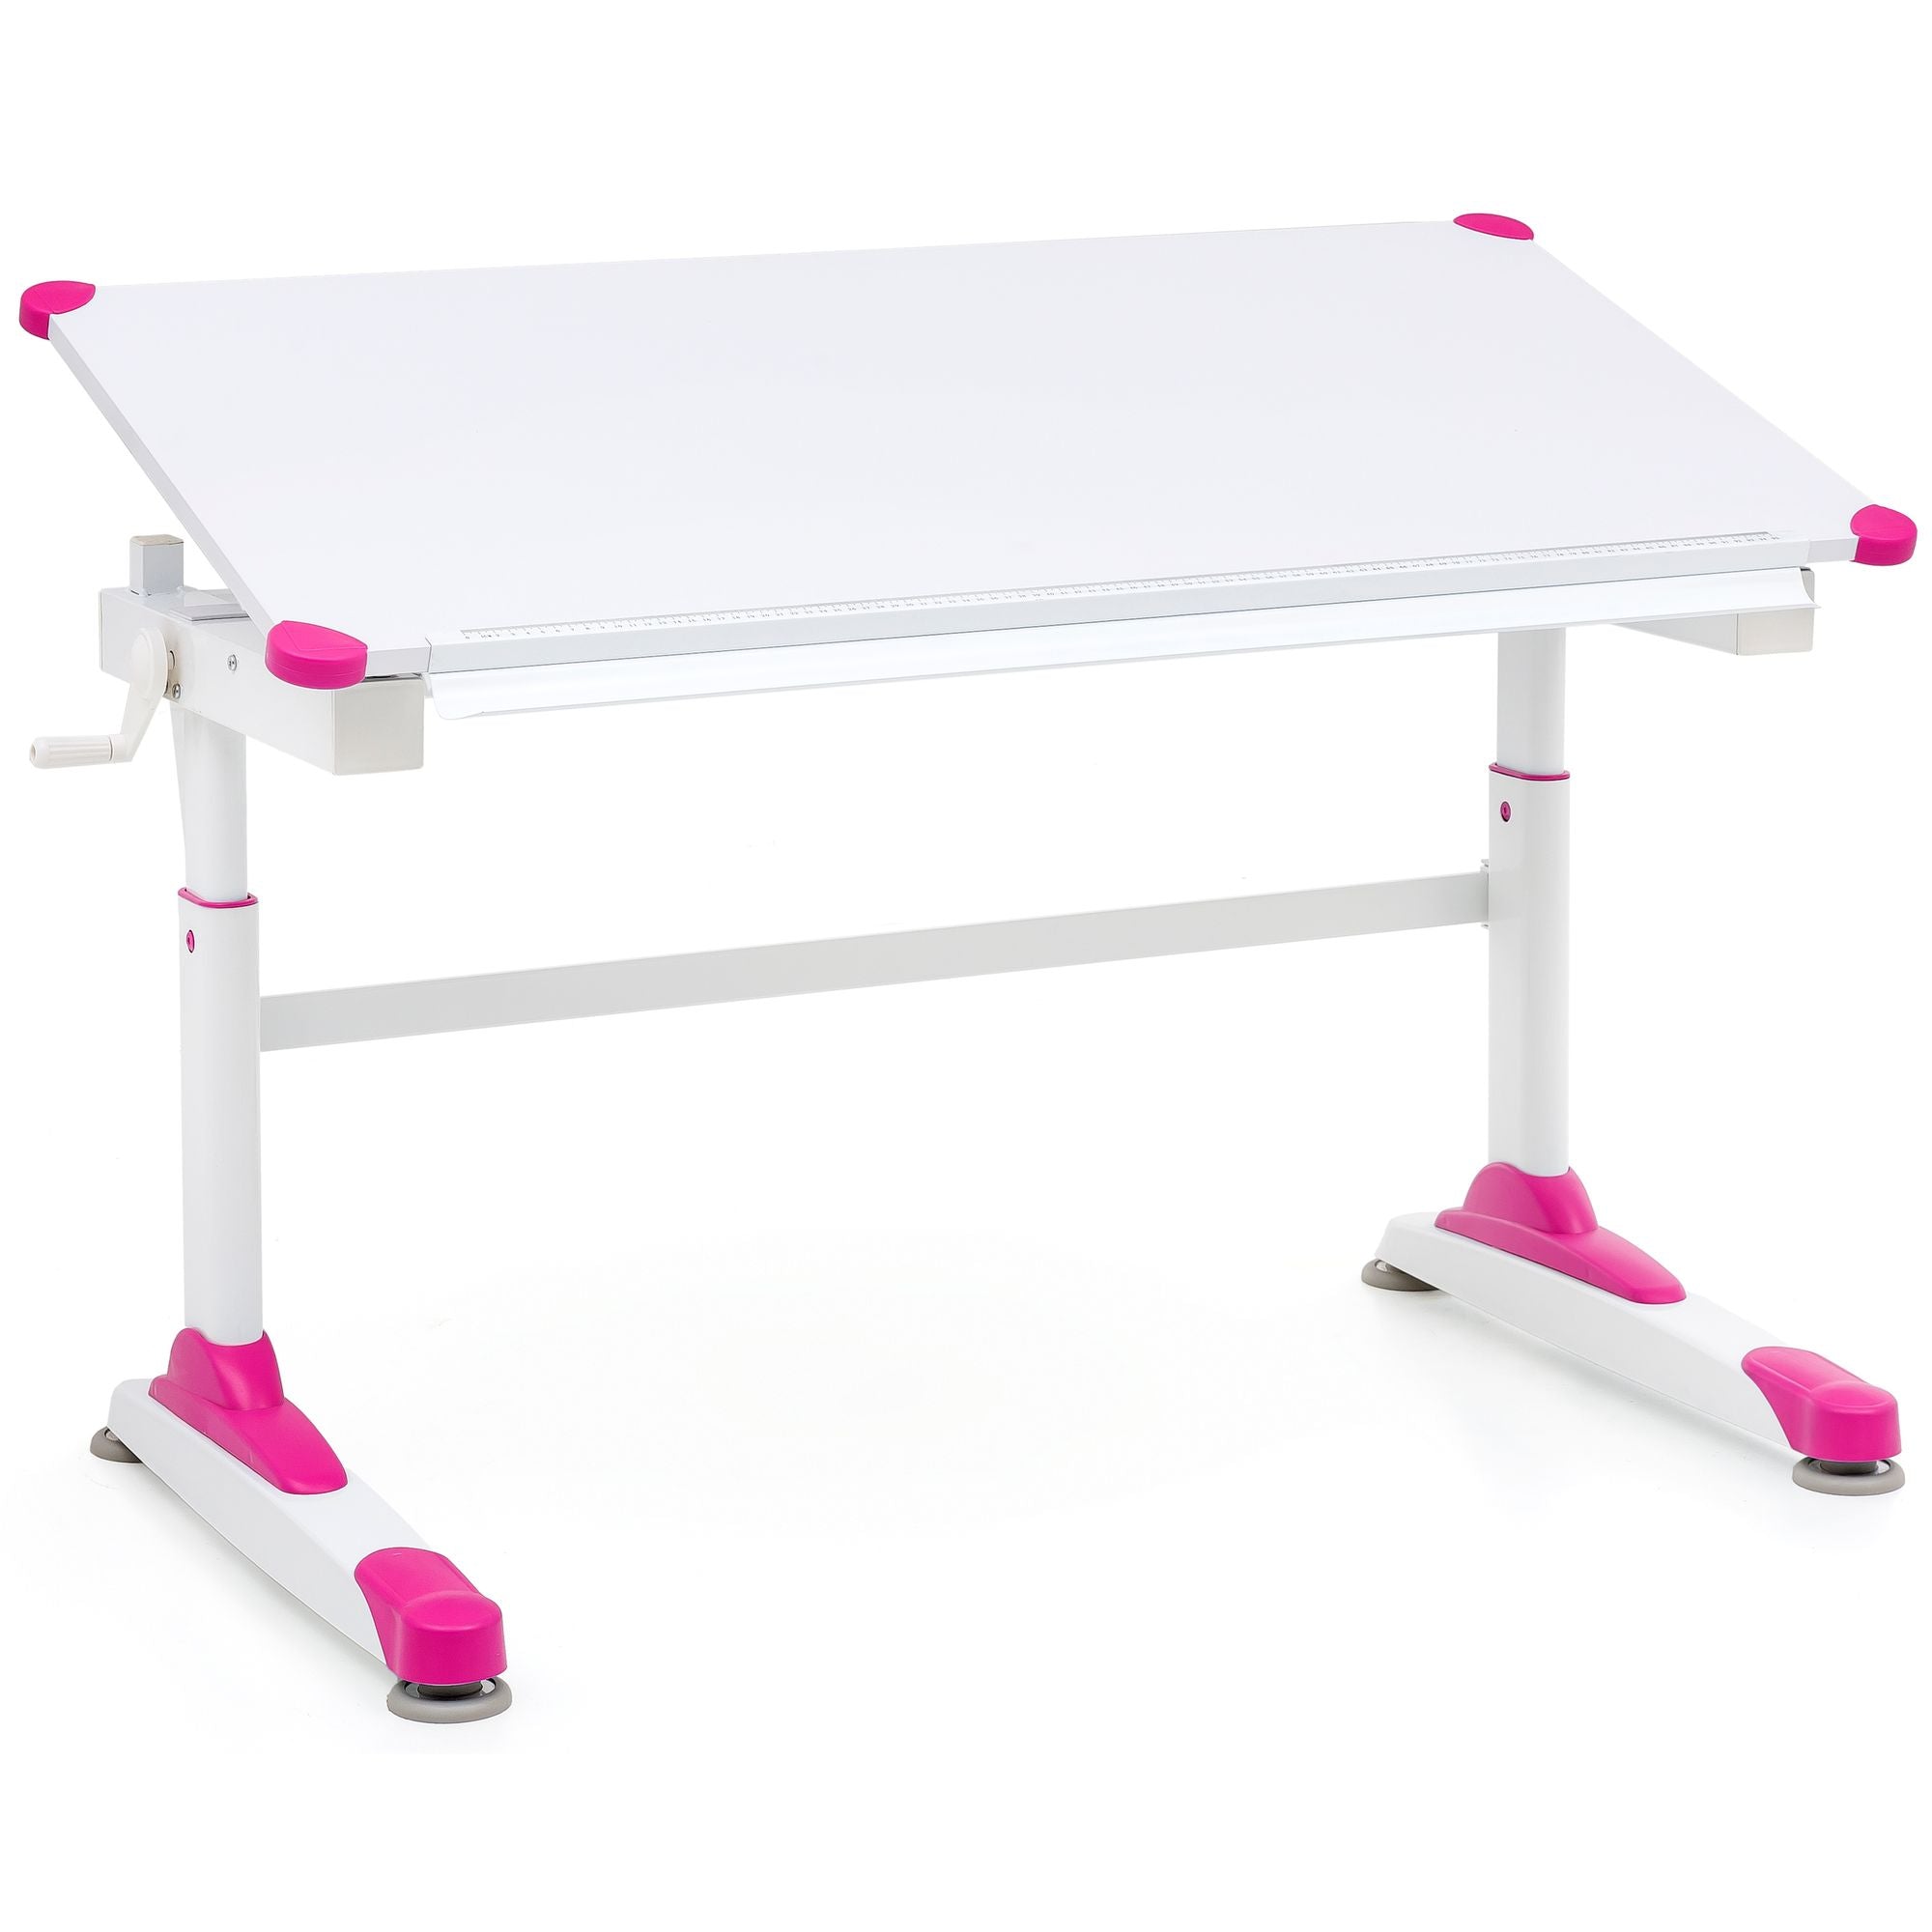 Billede af Børneskrivebord med justerbar højde, 119 x 67 cm, lyserød og hvid